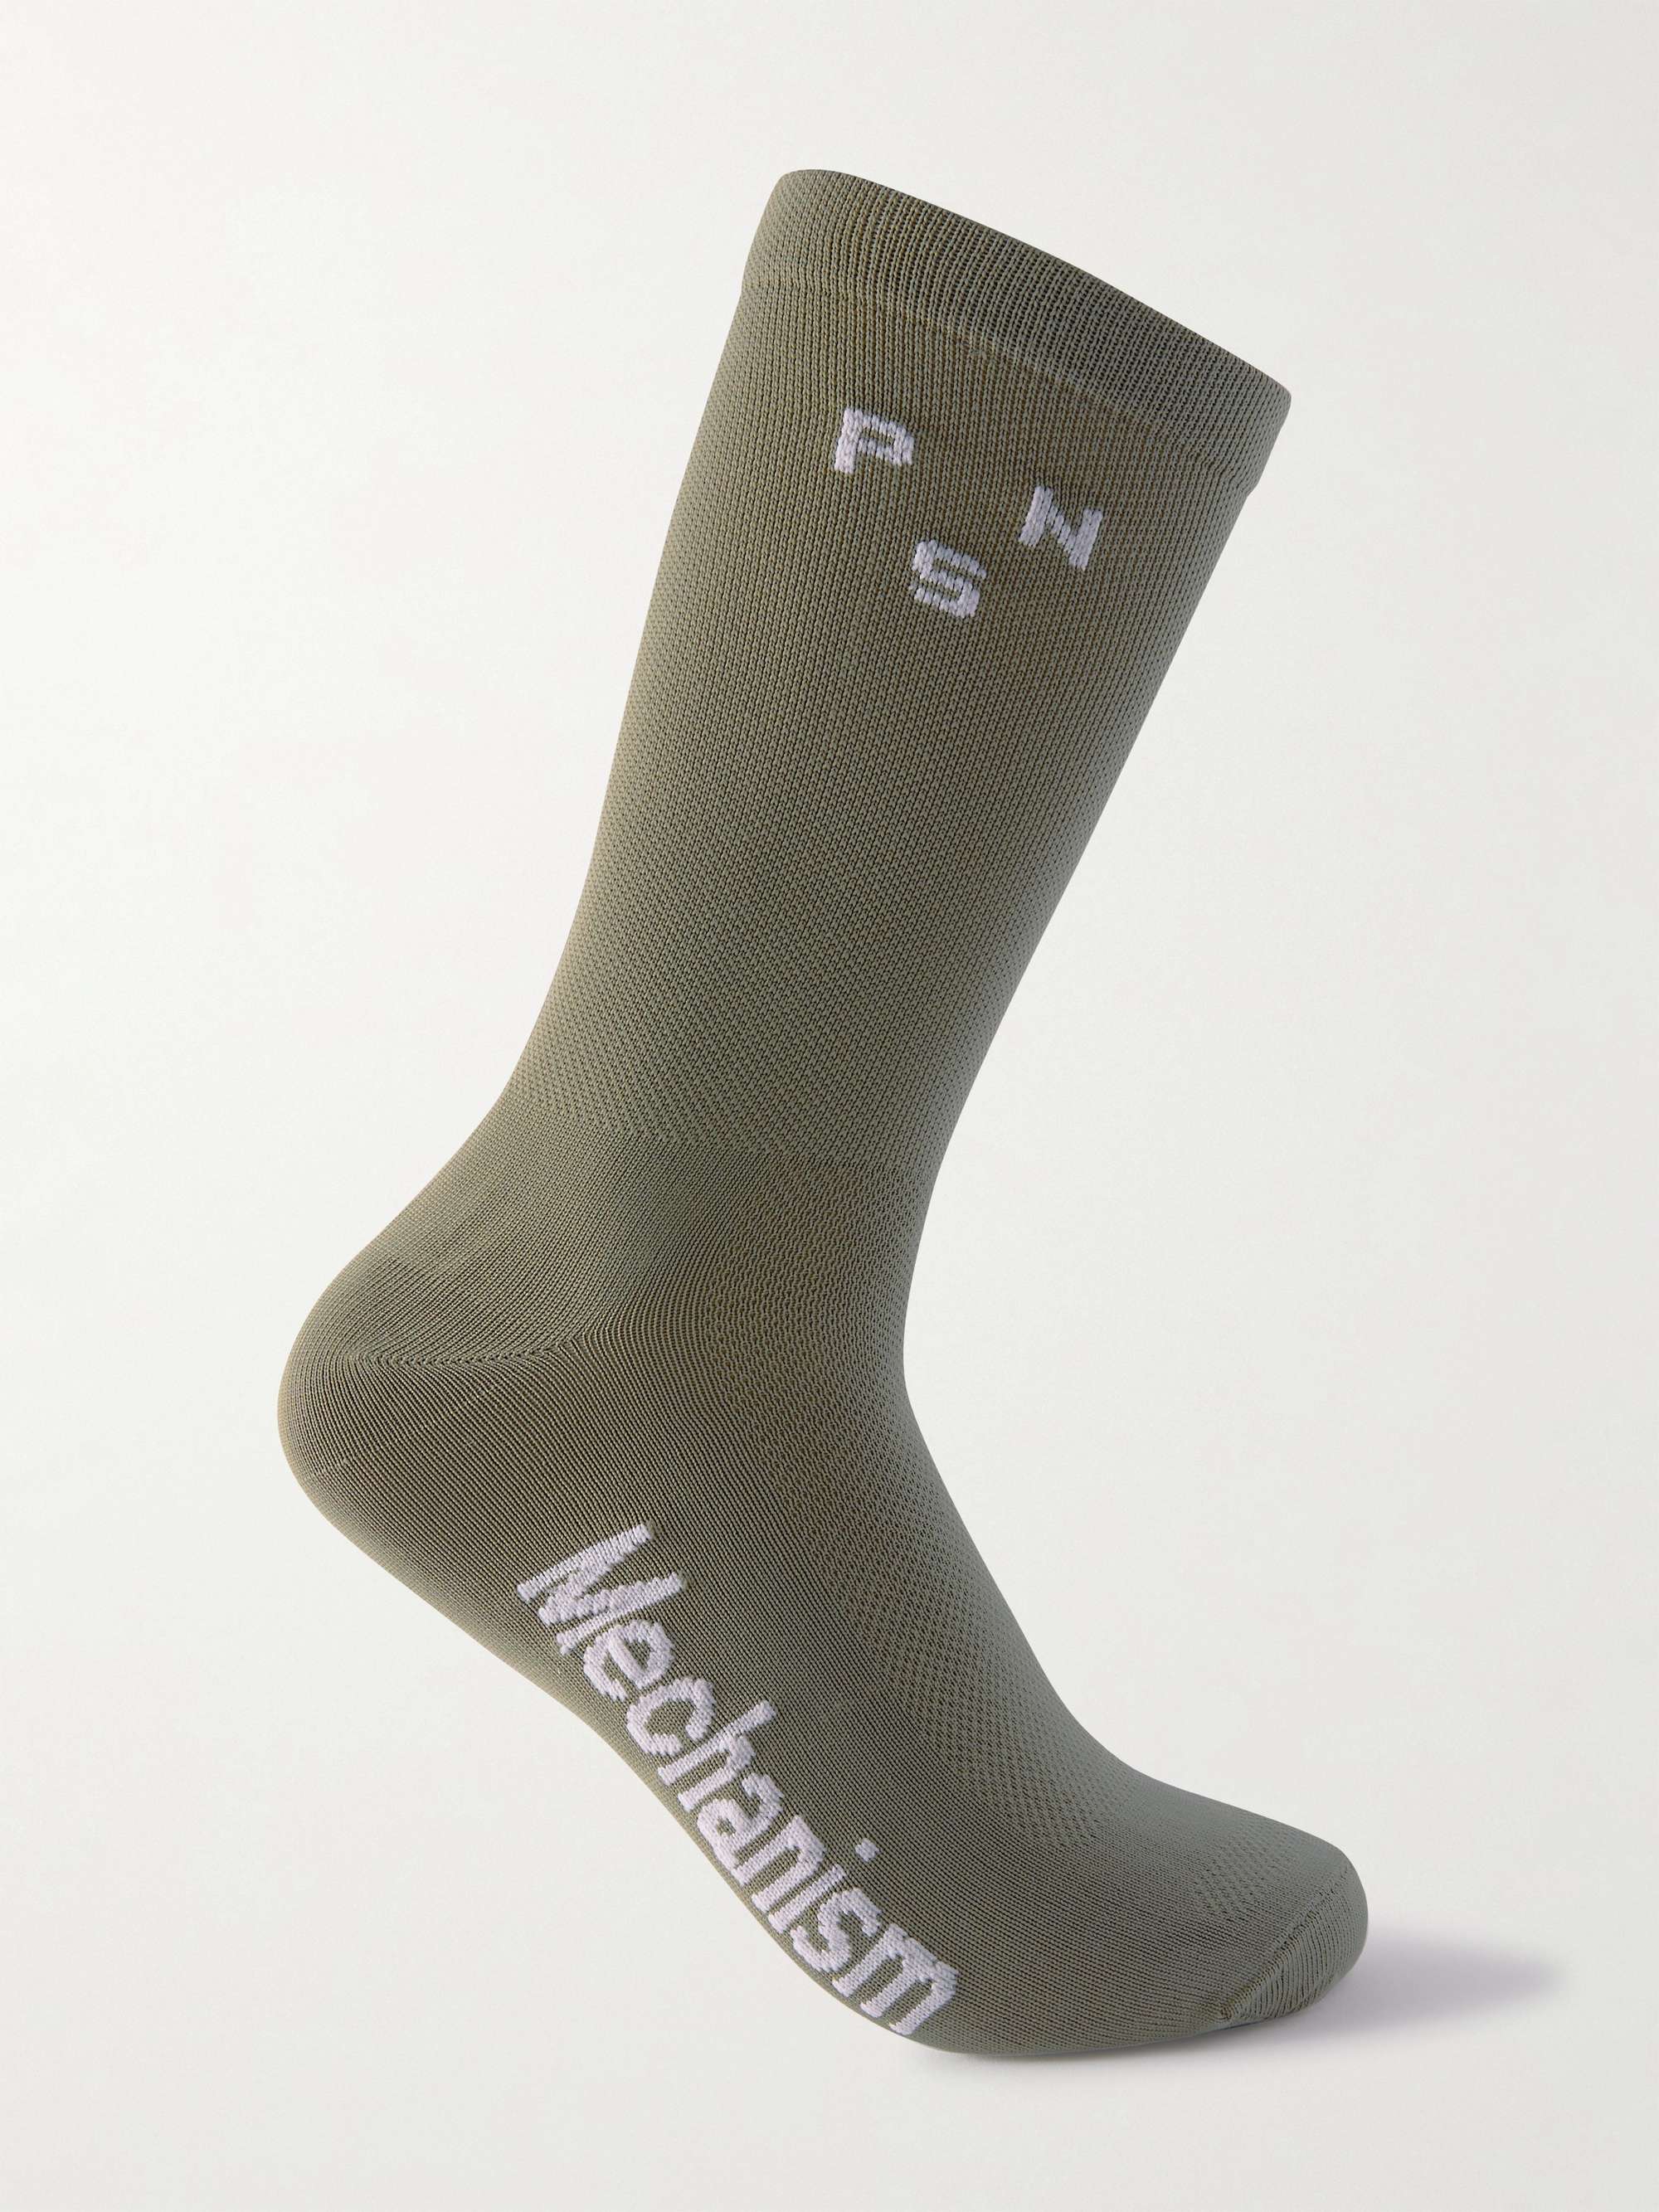 PAS NORMAL STUDIOS Mechanism Meryl Skinlife-Blend Cycling Socks